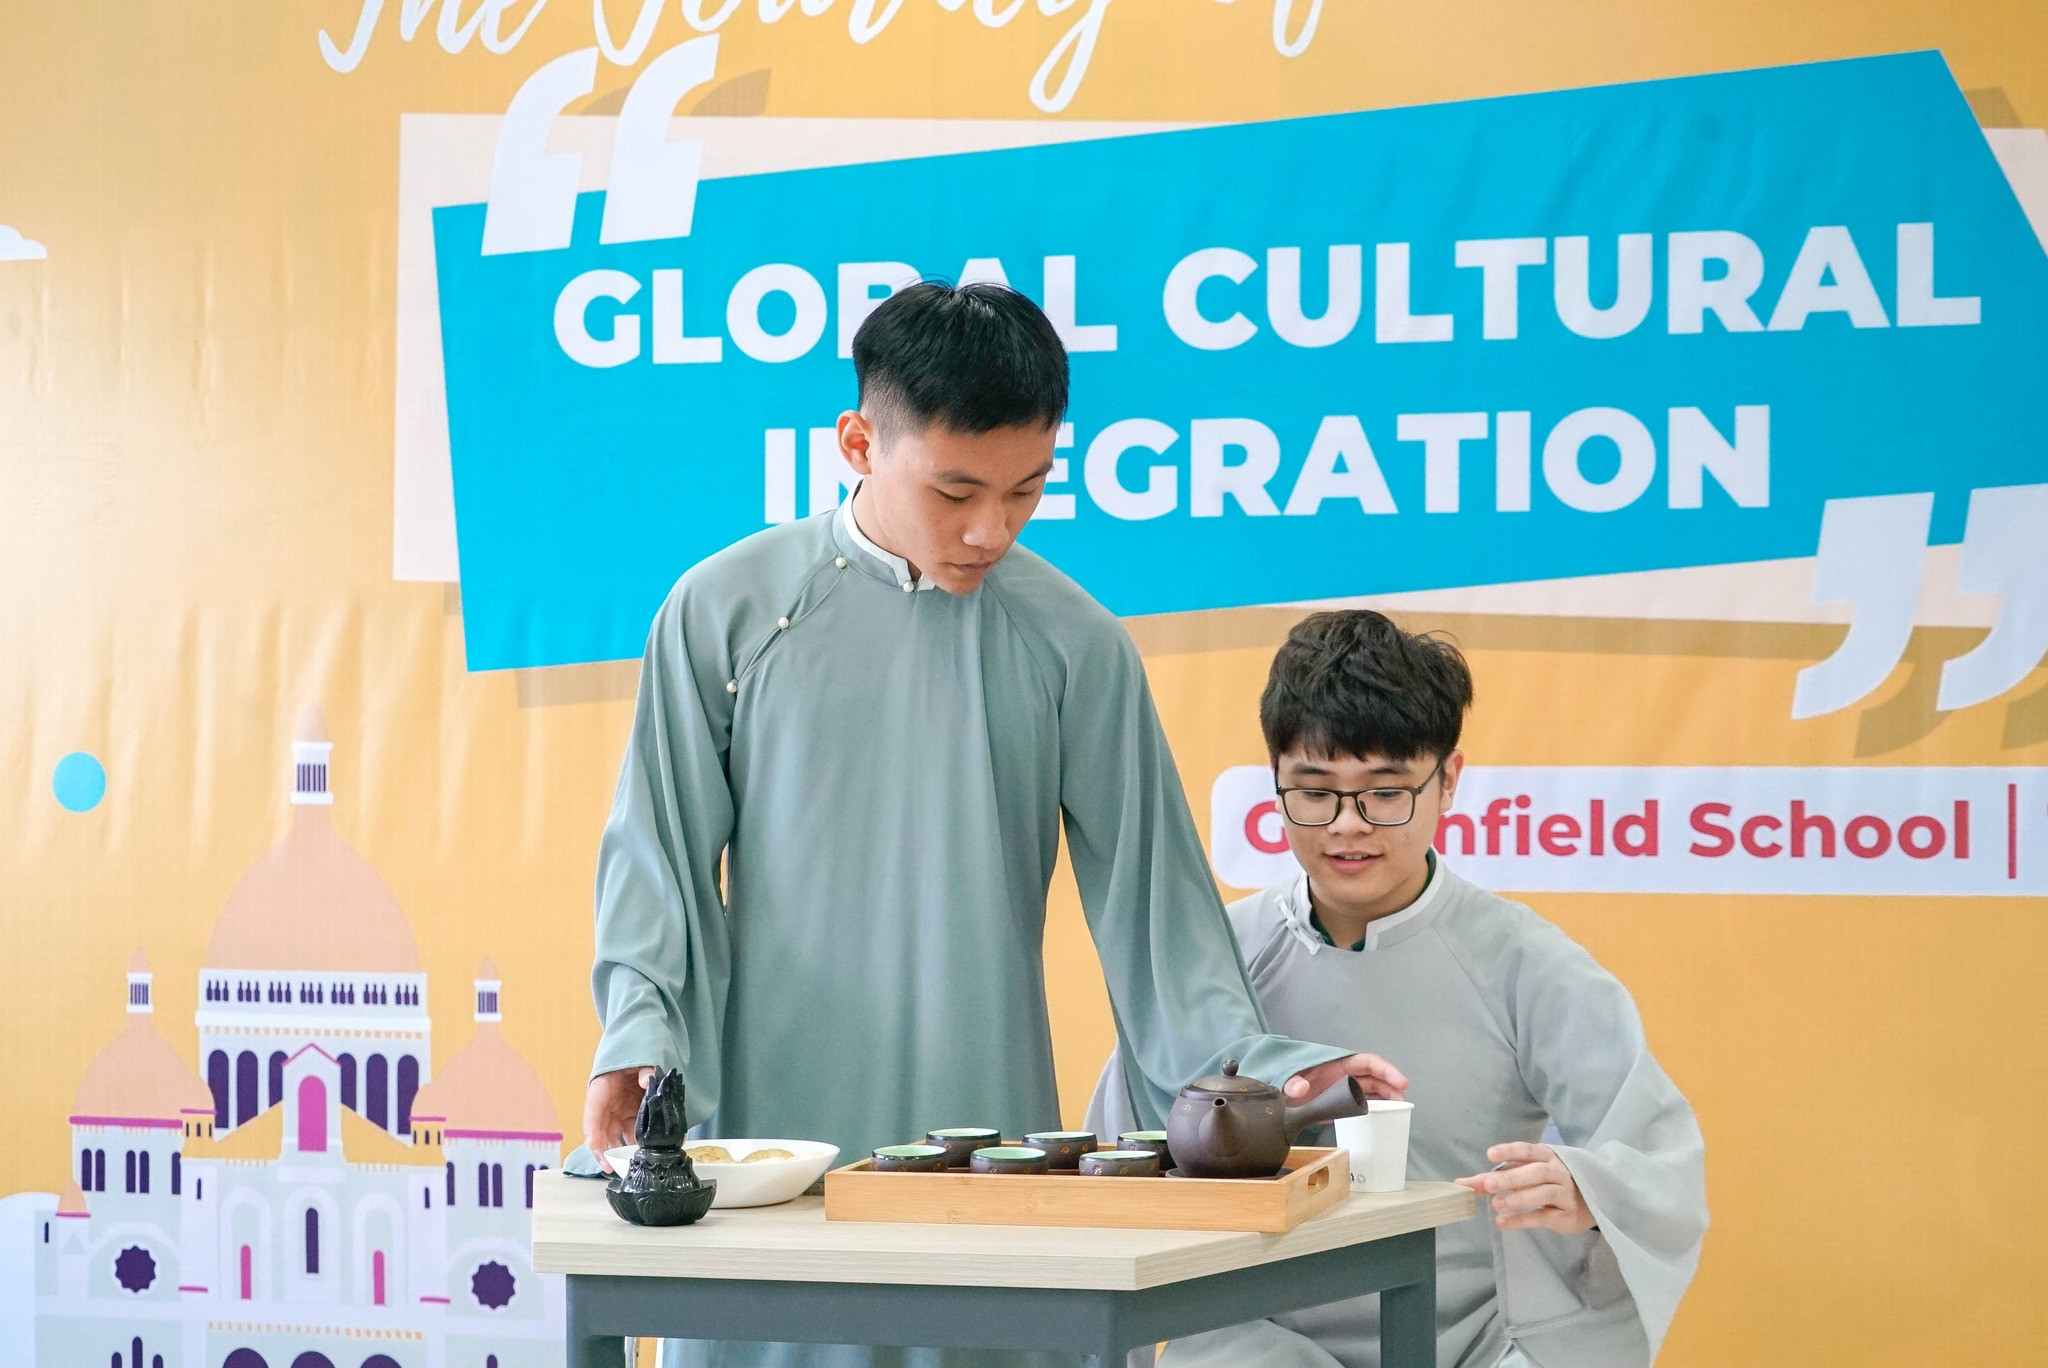 Festival "The journey to global cultural integration" - Bữa tiệc văn hóa đa màu sắc của học sinh Khối 11 Greenfield School 